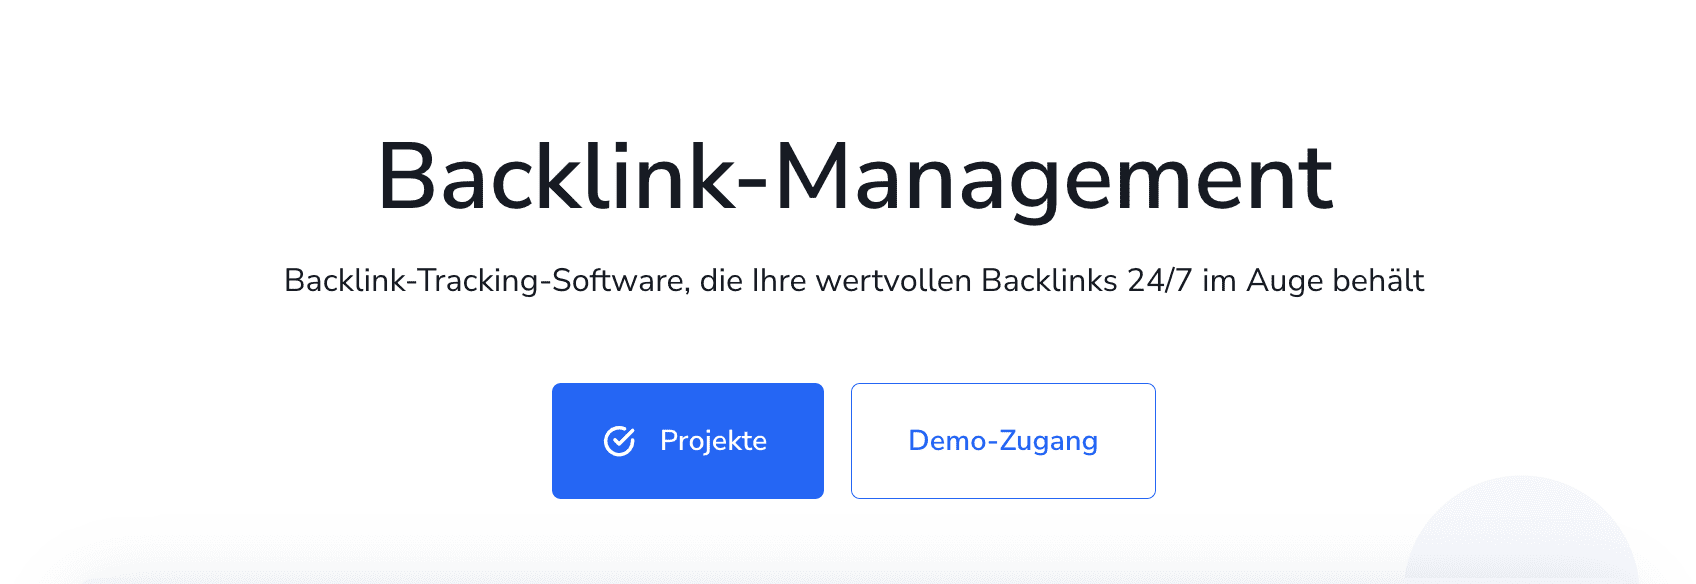 Backlink-Management